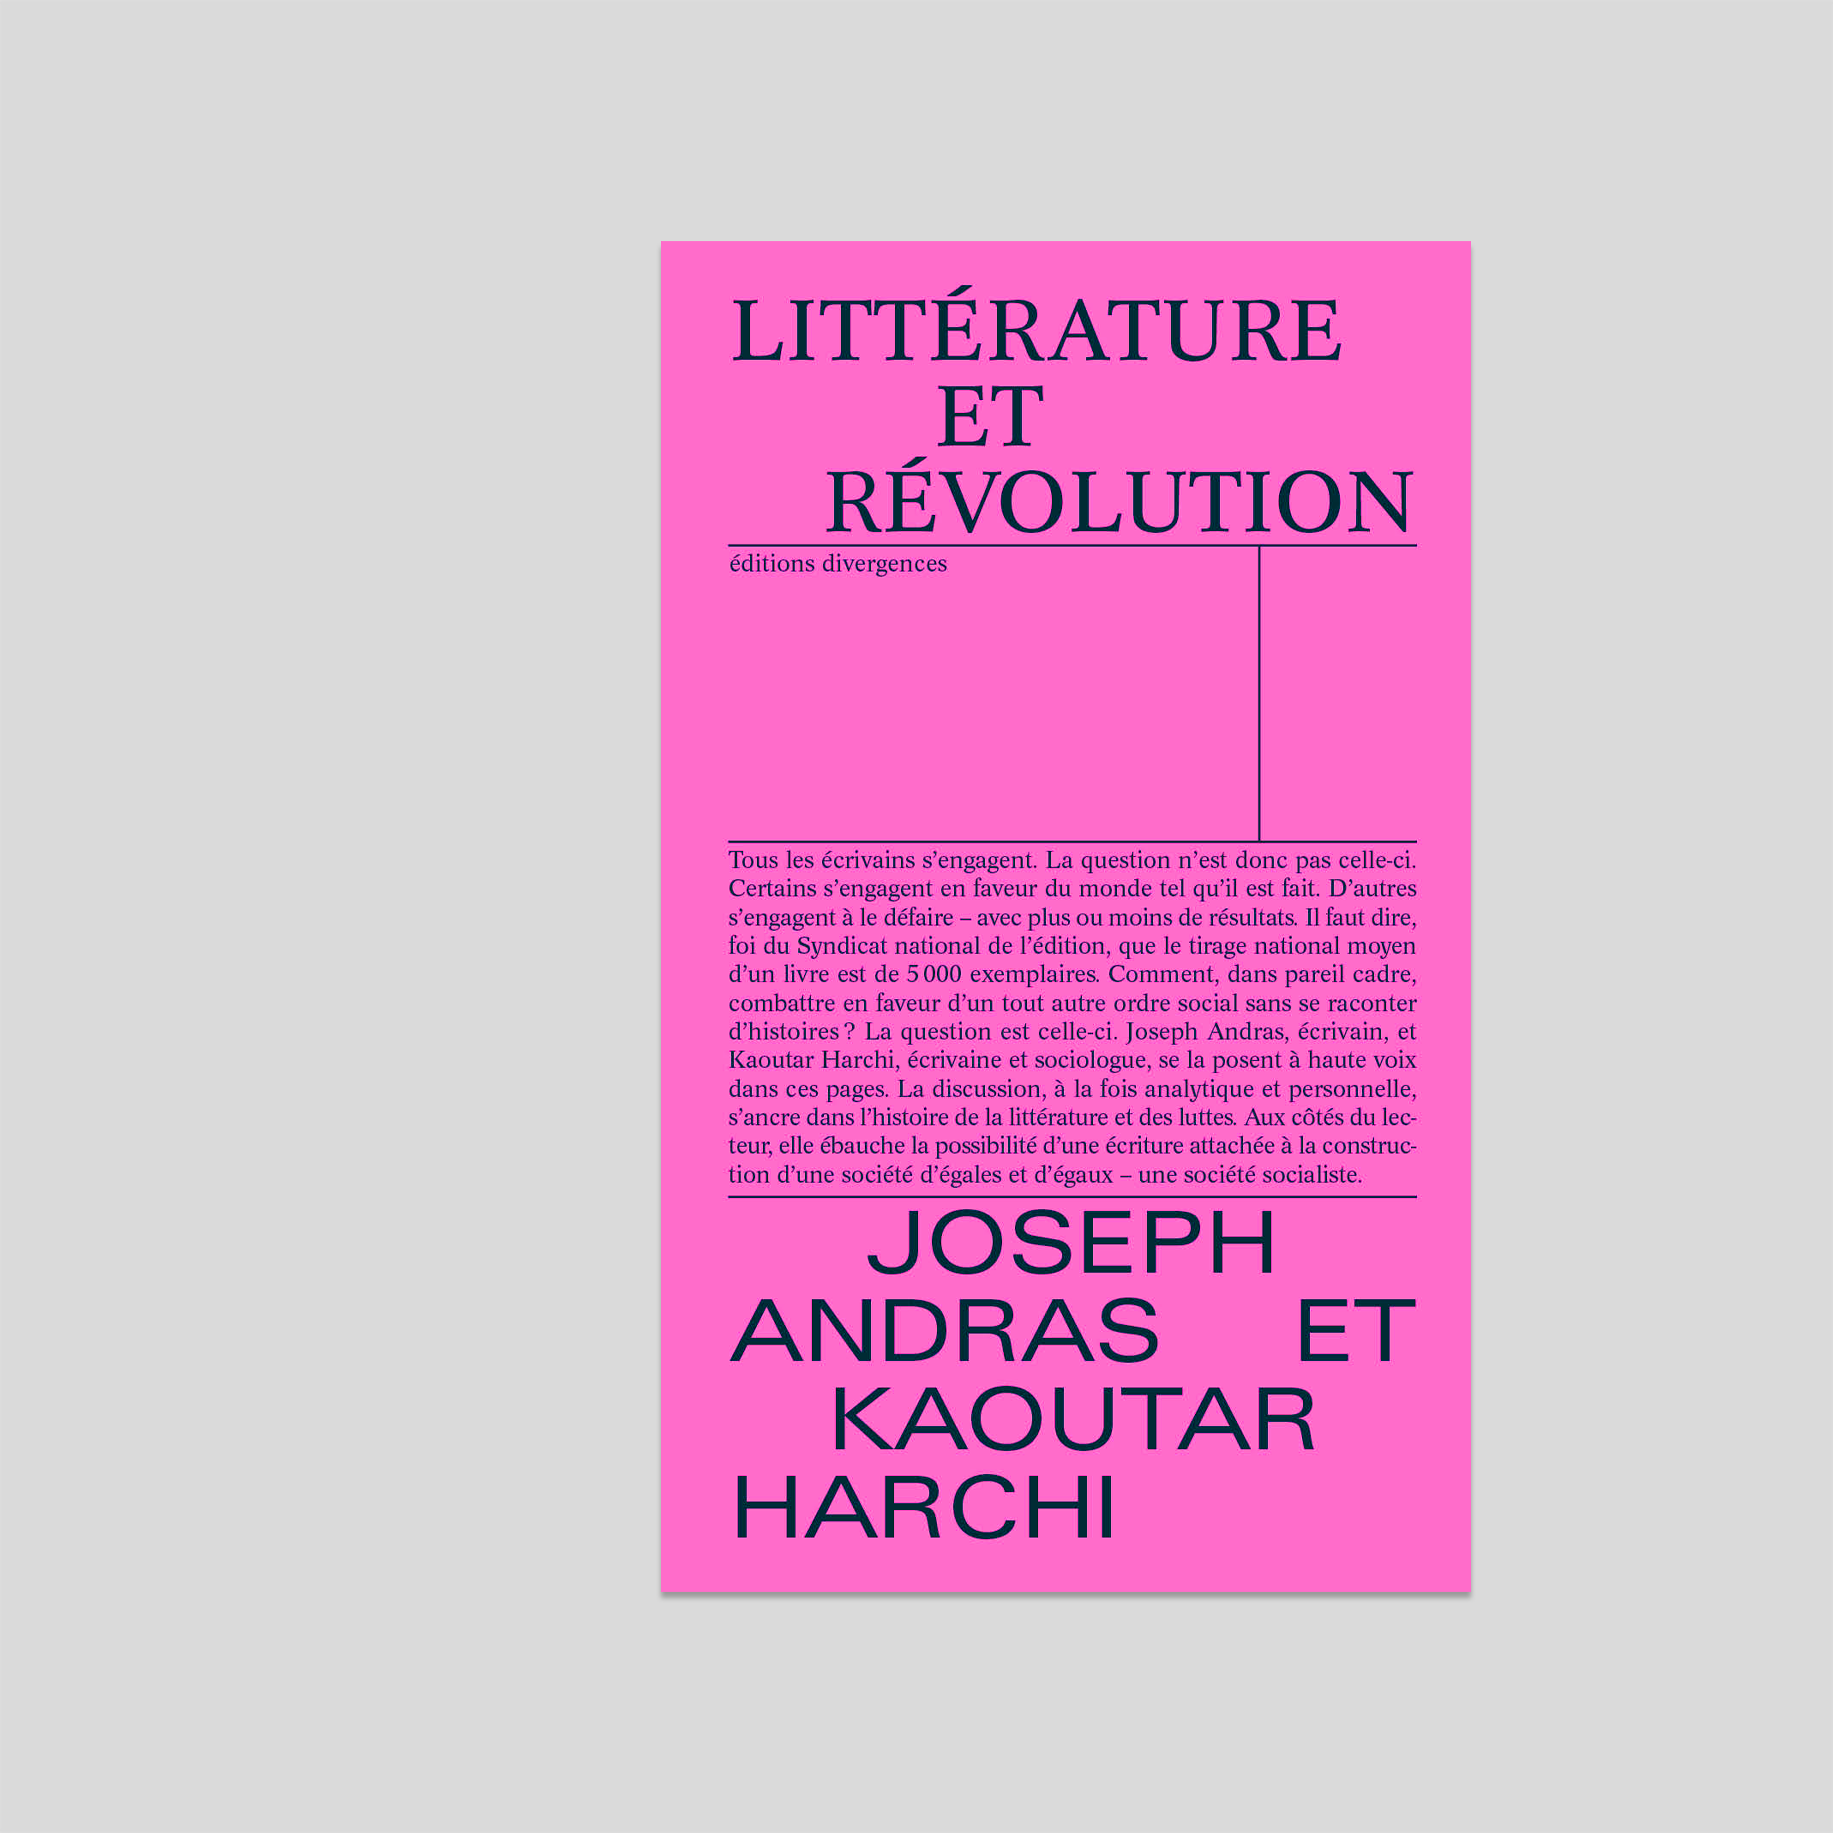 Littérature et révolution - Joseph Andras et Kaoutar Harchi